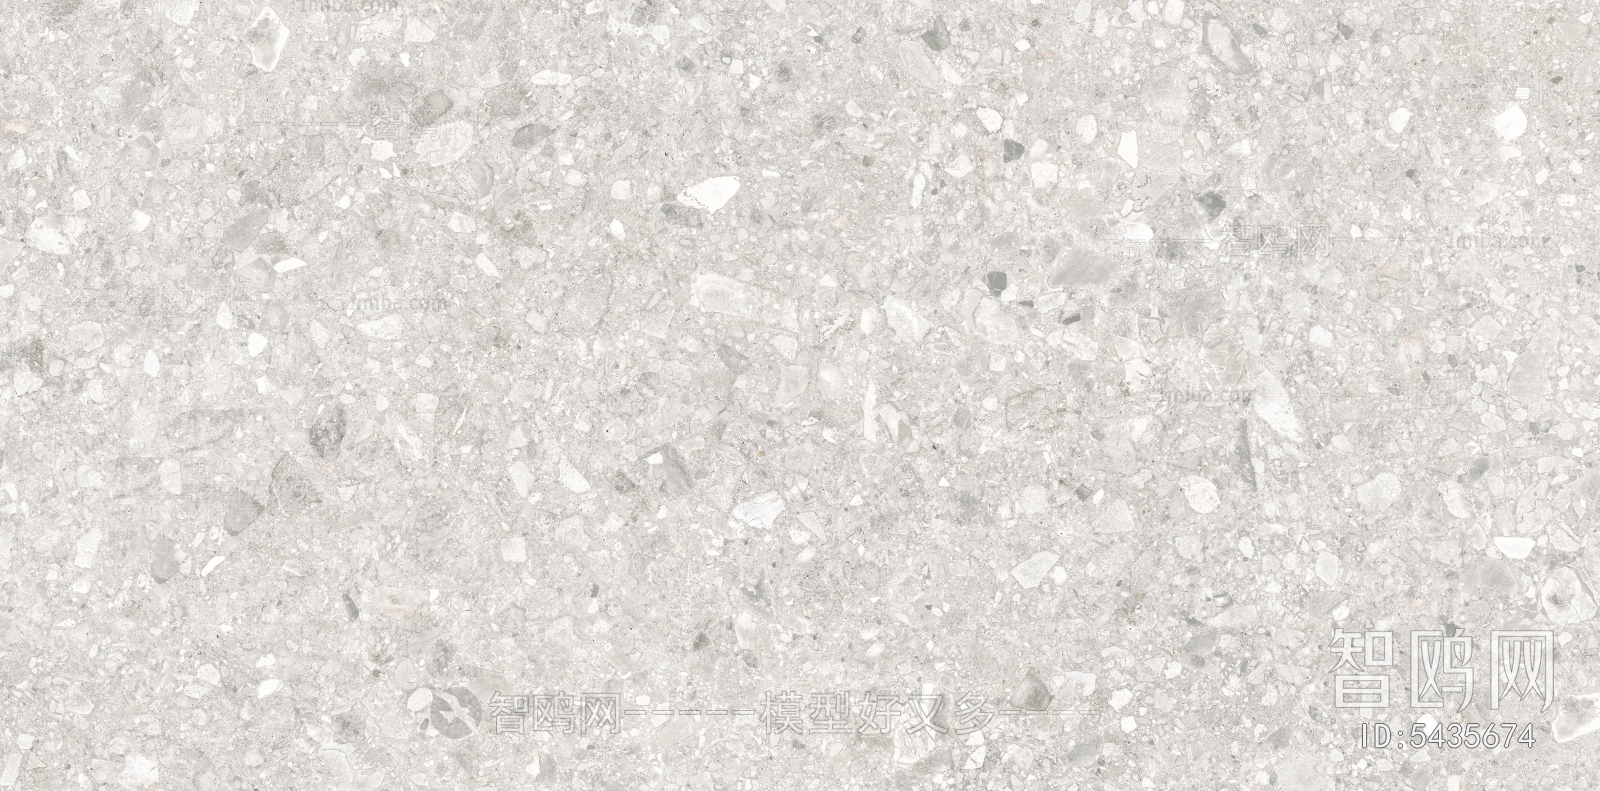 利卡砂石灰白色超清水磨石